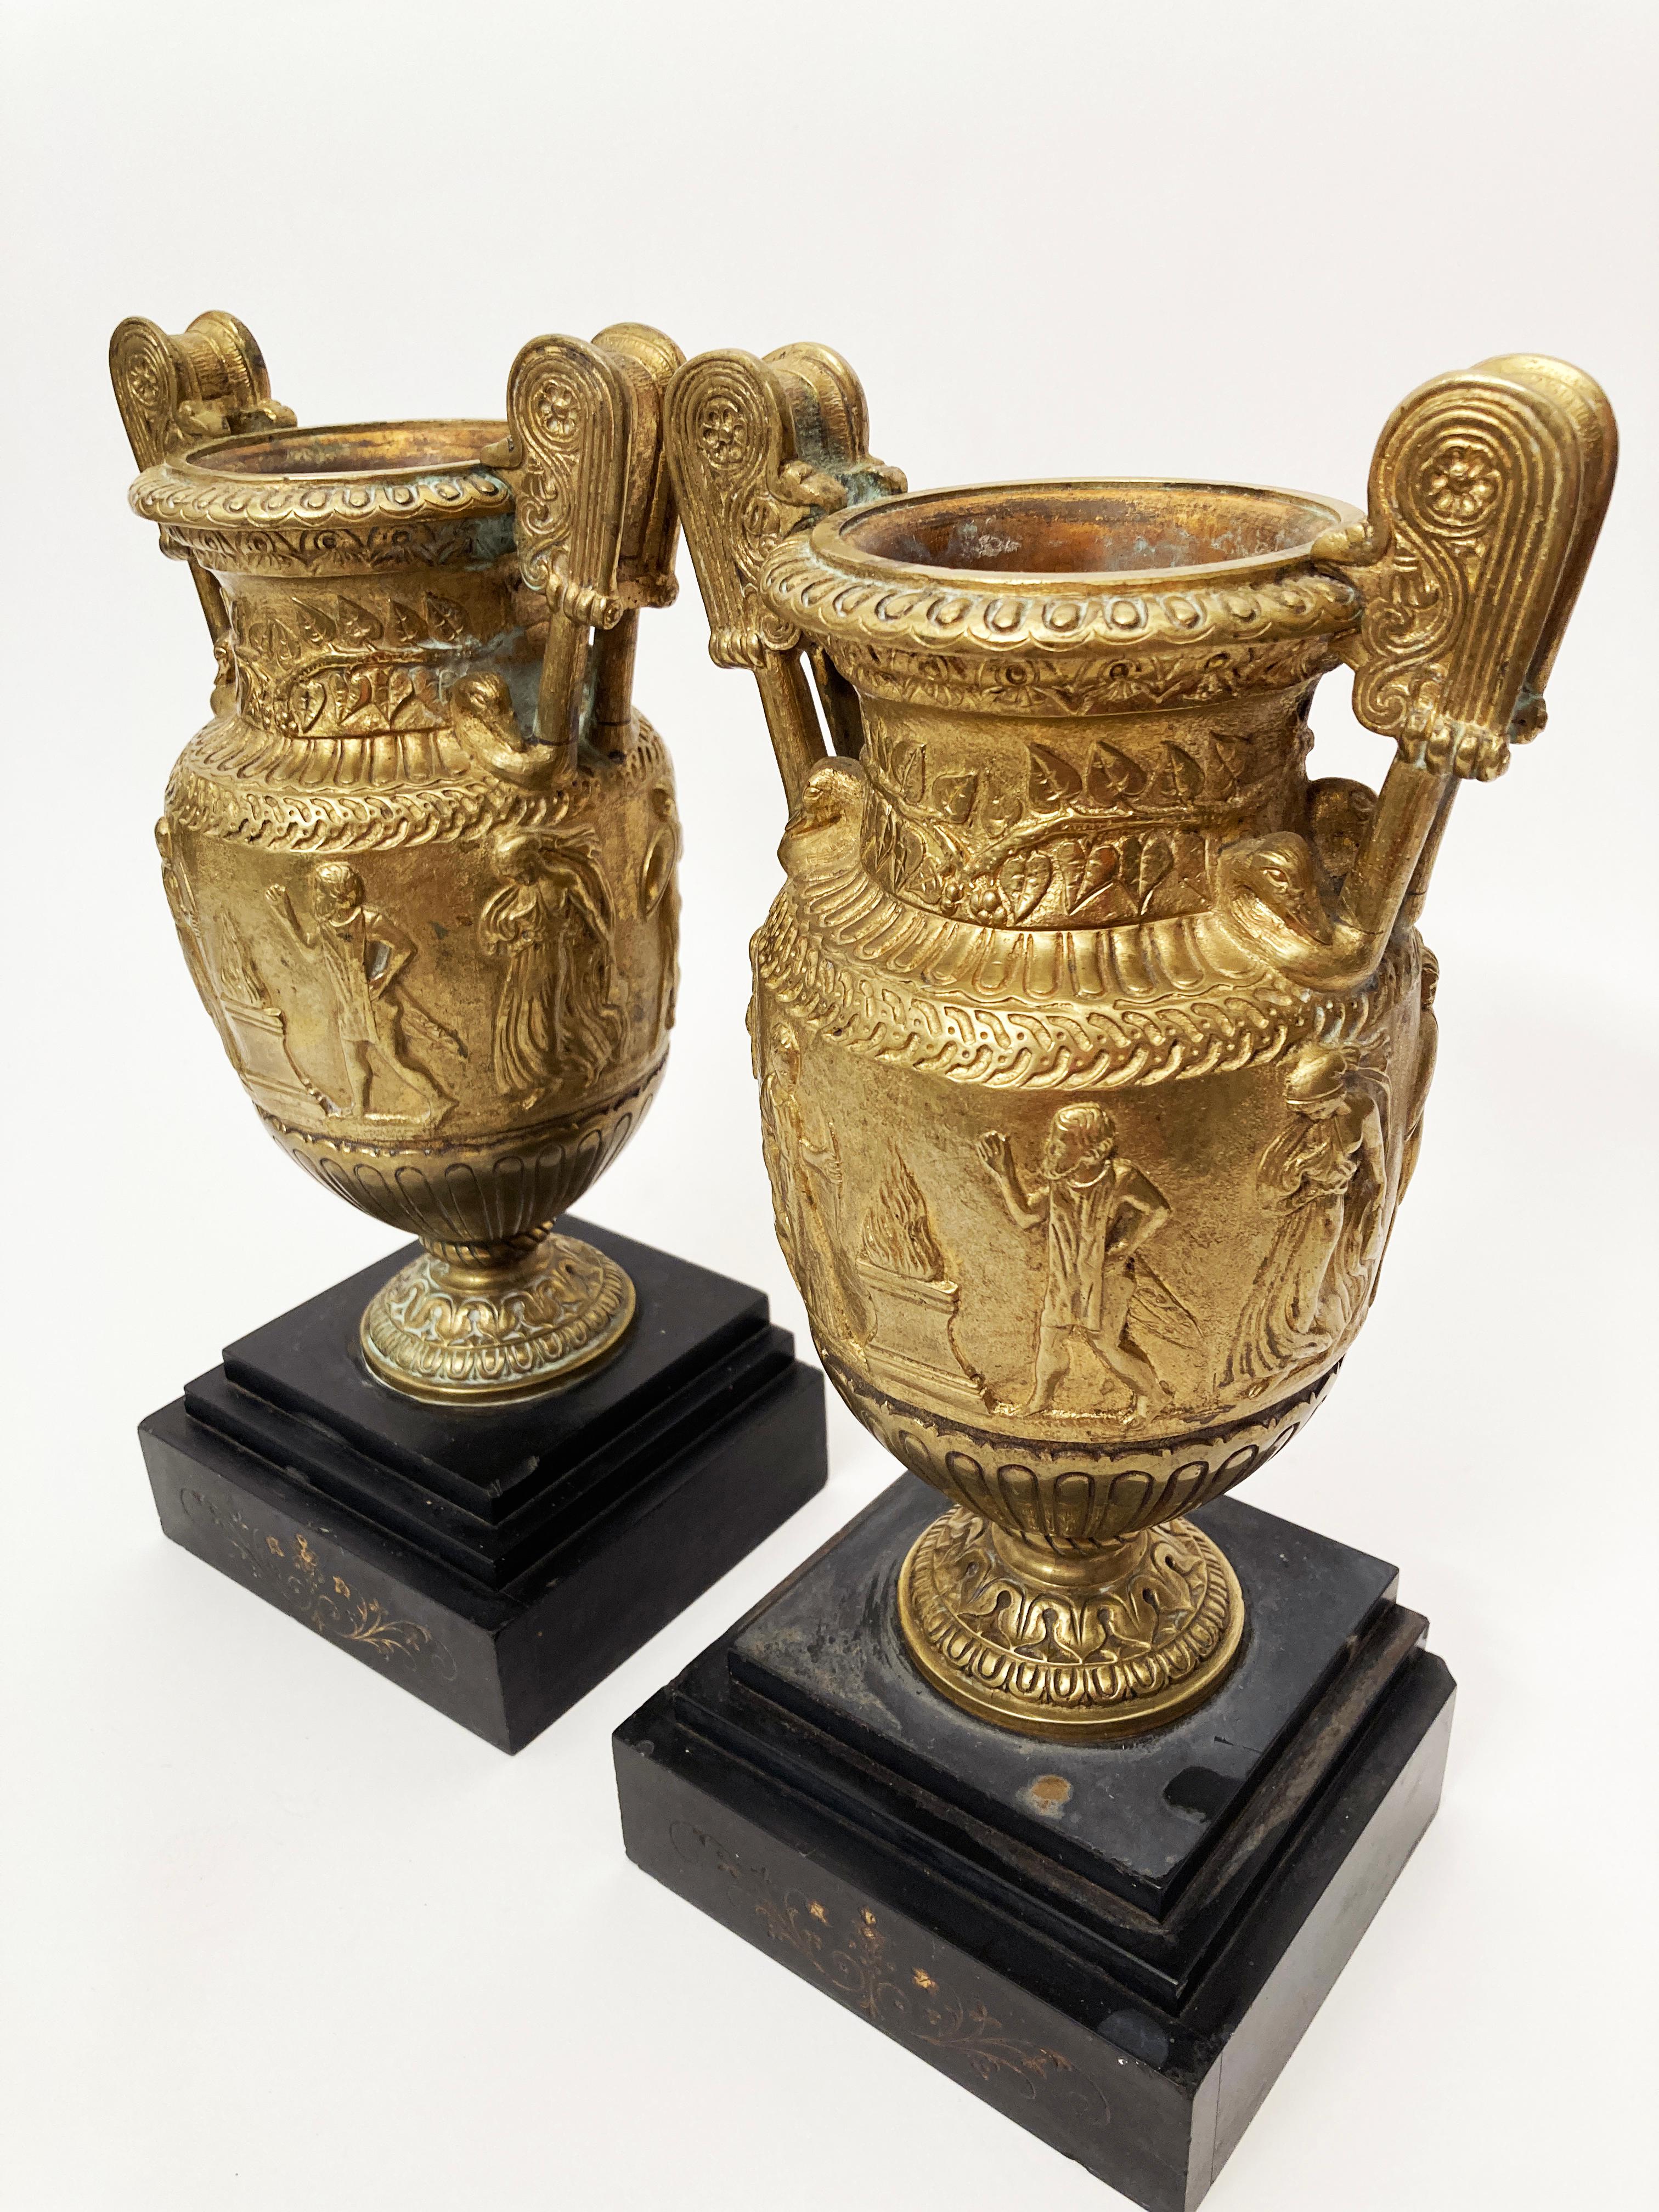 Cette paire d'urnes en bronze doré à volute sur base en pierre, datant de la période du Grand Tour au début du 19e siècle, est absolument époustouflante. La base est une lourde ardoise noire avec des motifs floraux néoclassiques gravés sur le devant